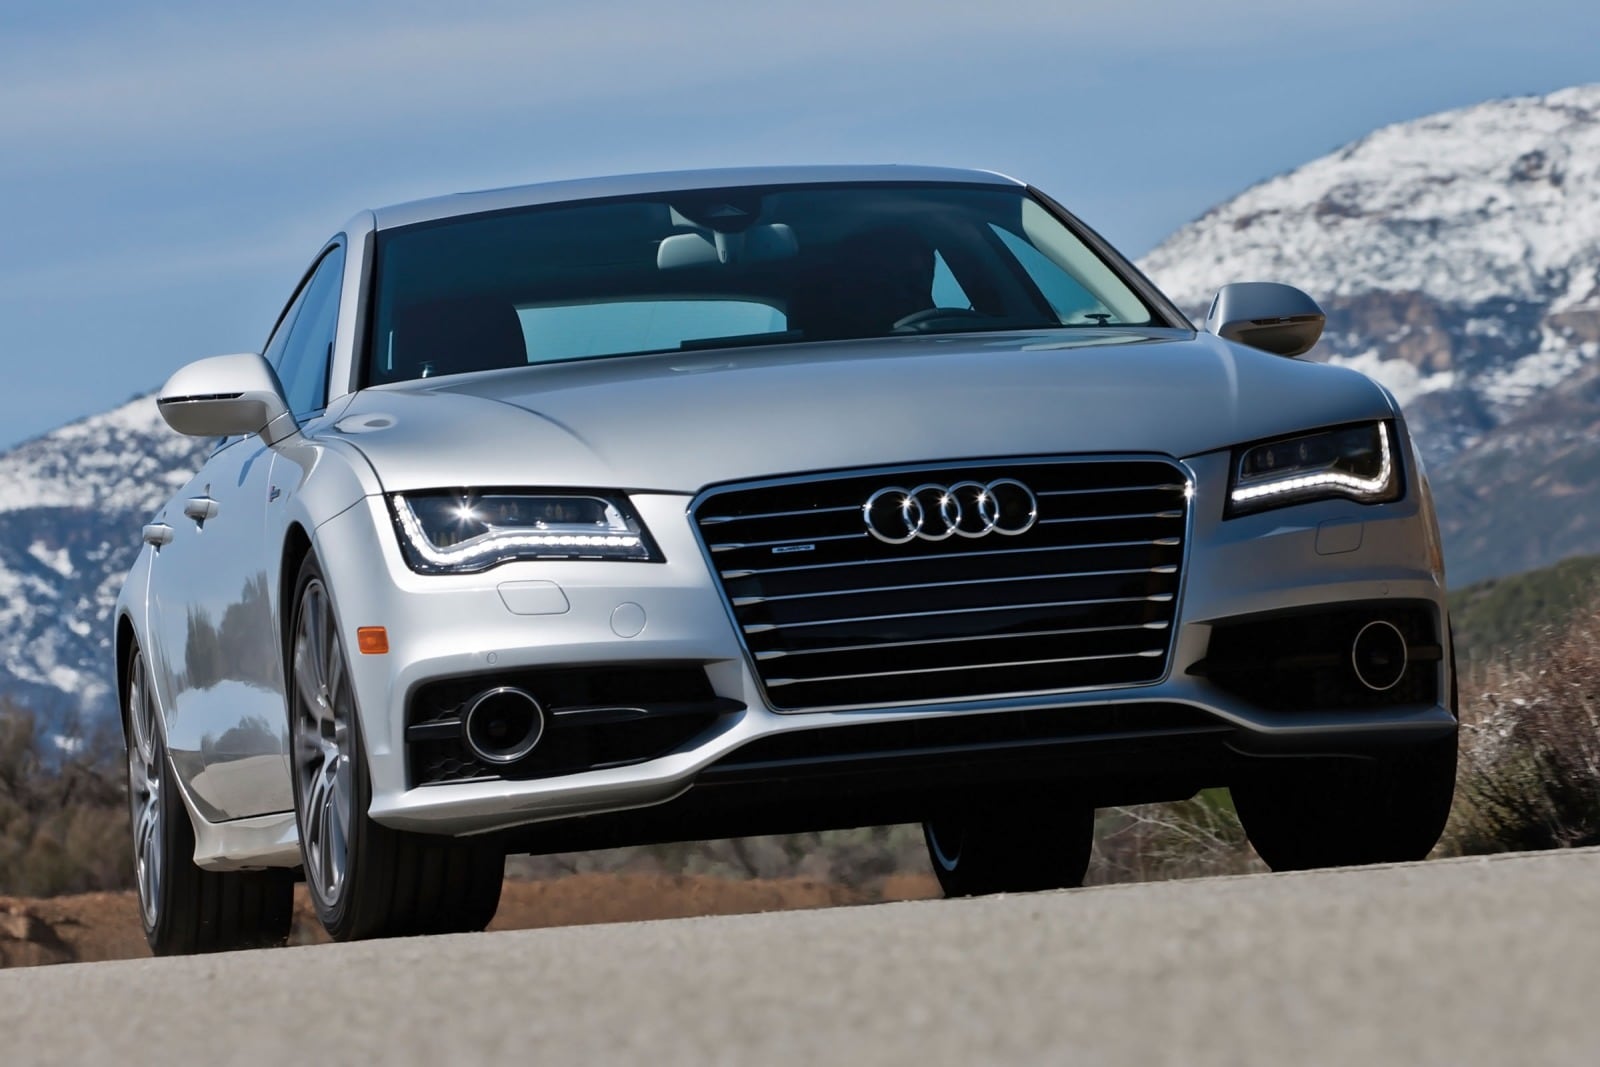 2013 Audi A7 Review & Ratings | Edmunds